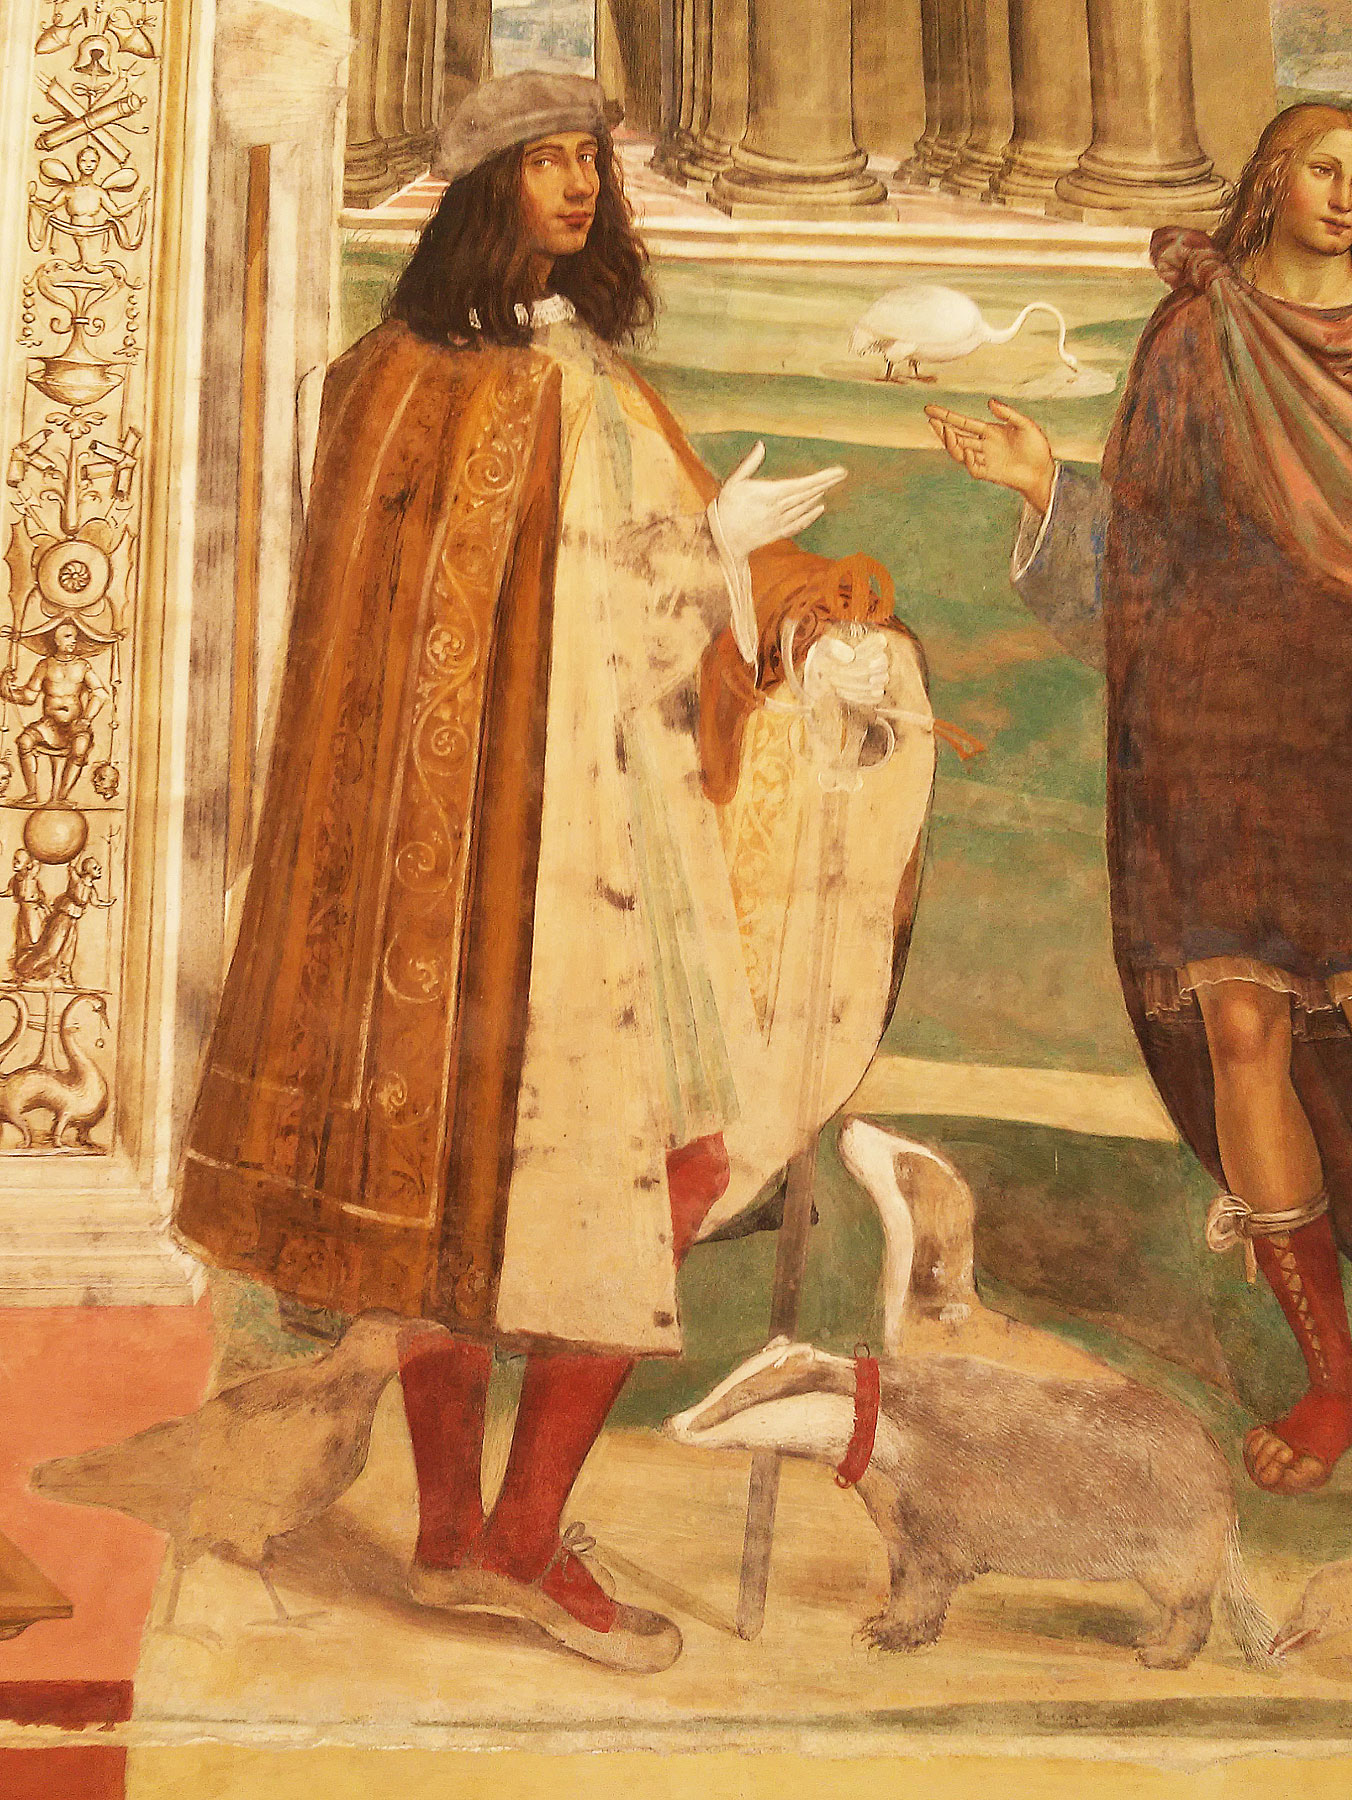 L'autoritratto del Sodoma negli affreschi di Monteoliveto Maggiore
